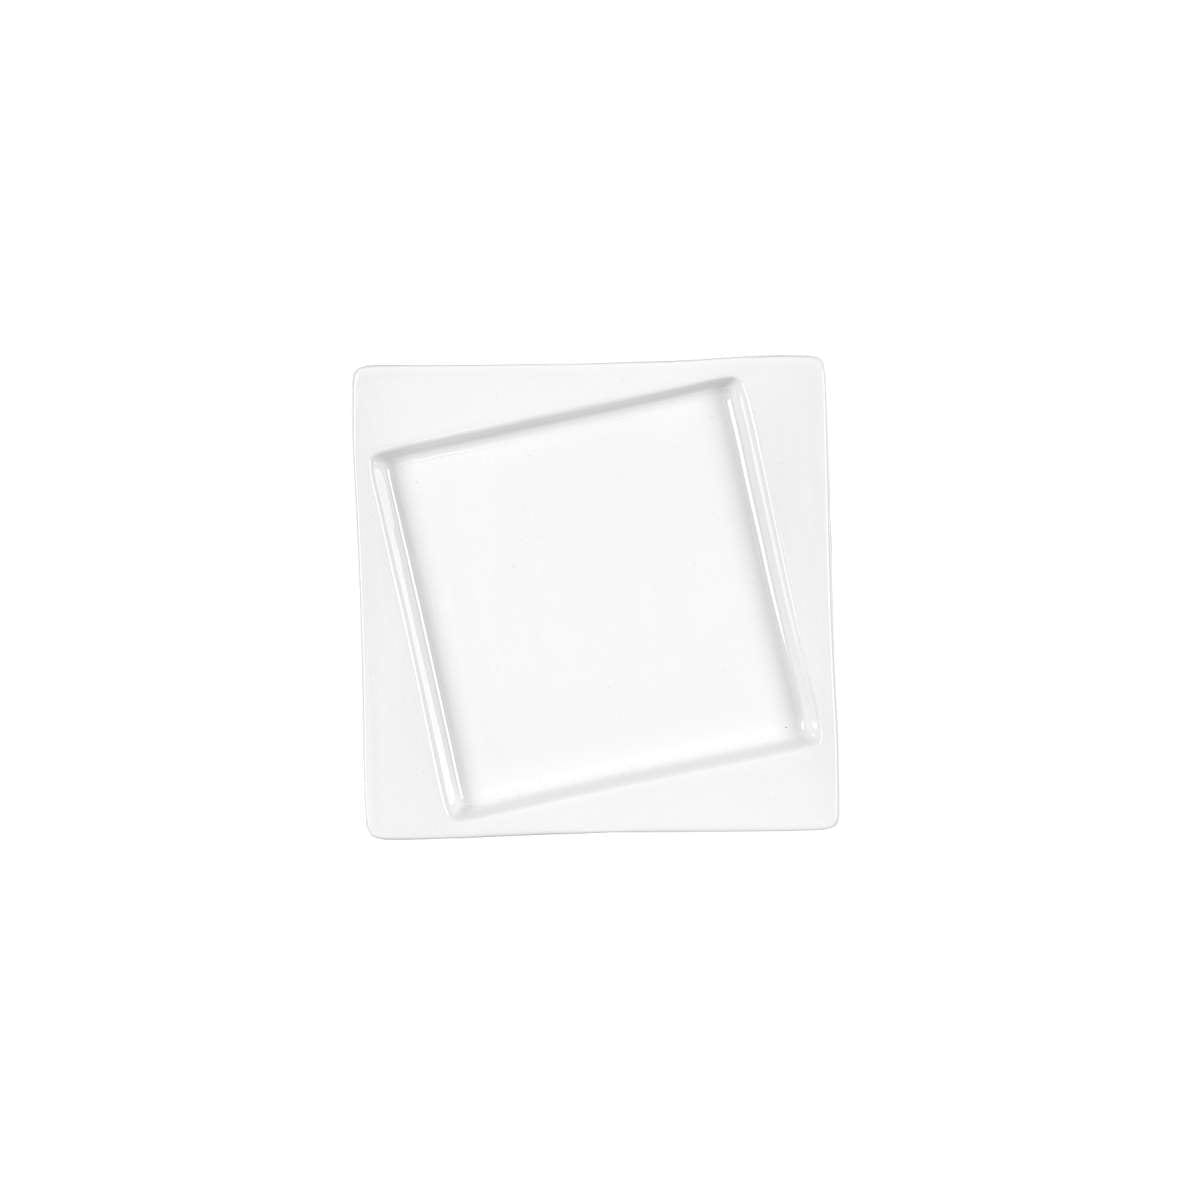 Πιάτο Γλυκού Τετράγωνο Πορσελάνης Λευκό Art Et Lumiere 16x16x2εκ. 06980 (Σετ 6 Τεμάχια) (Υλικό: Πορσελάνη, Χρώμα: Λευκό, Μέγεθος: Μεμονωμένο) - Art Et Lumiere - lumiere_06980